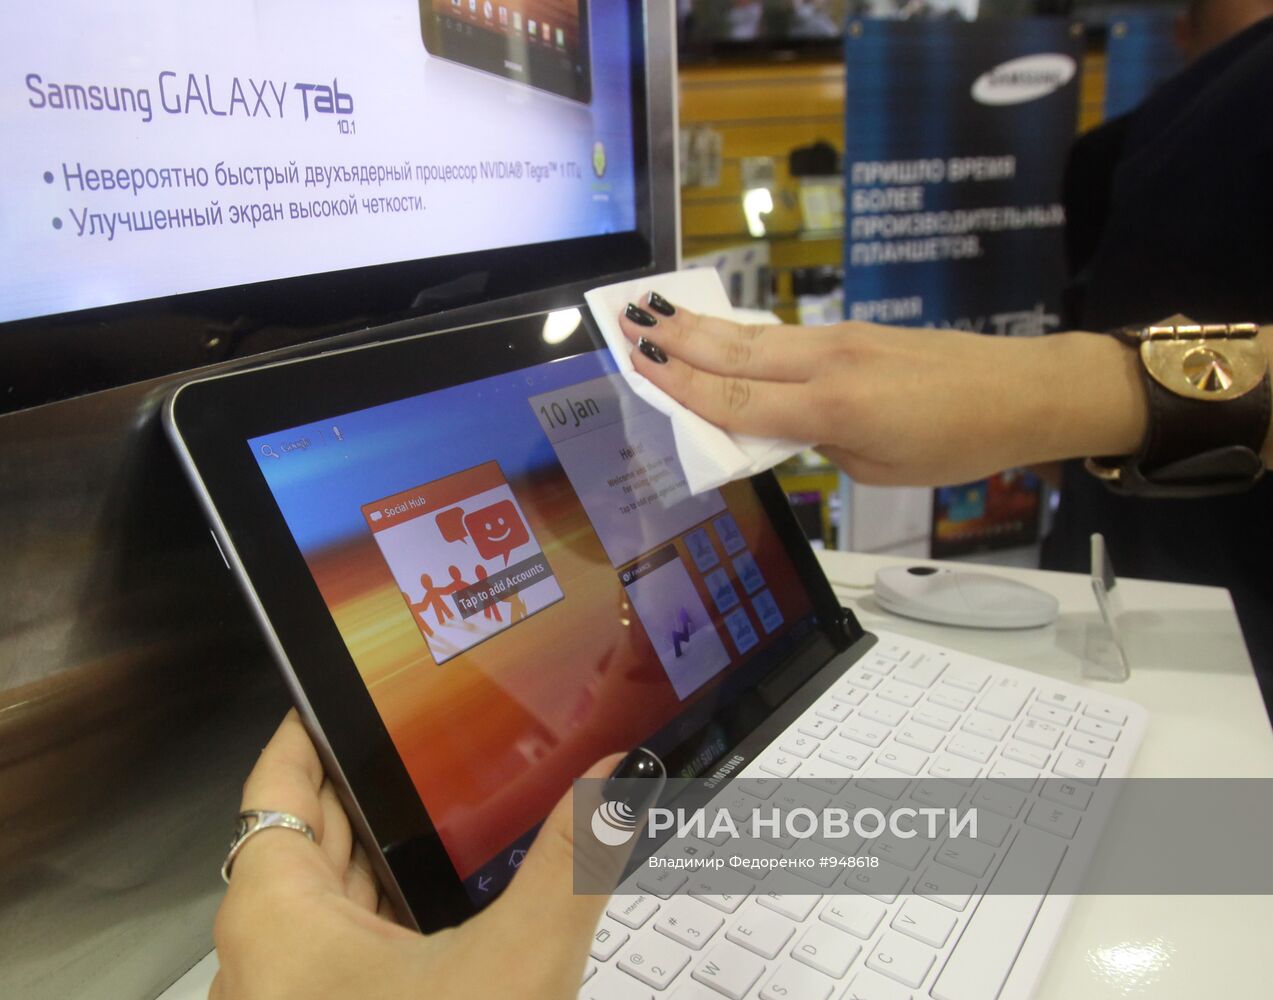 Запущен в продажу планшетный компьютер Samsung Galaxy Tab